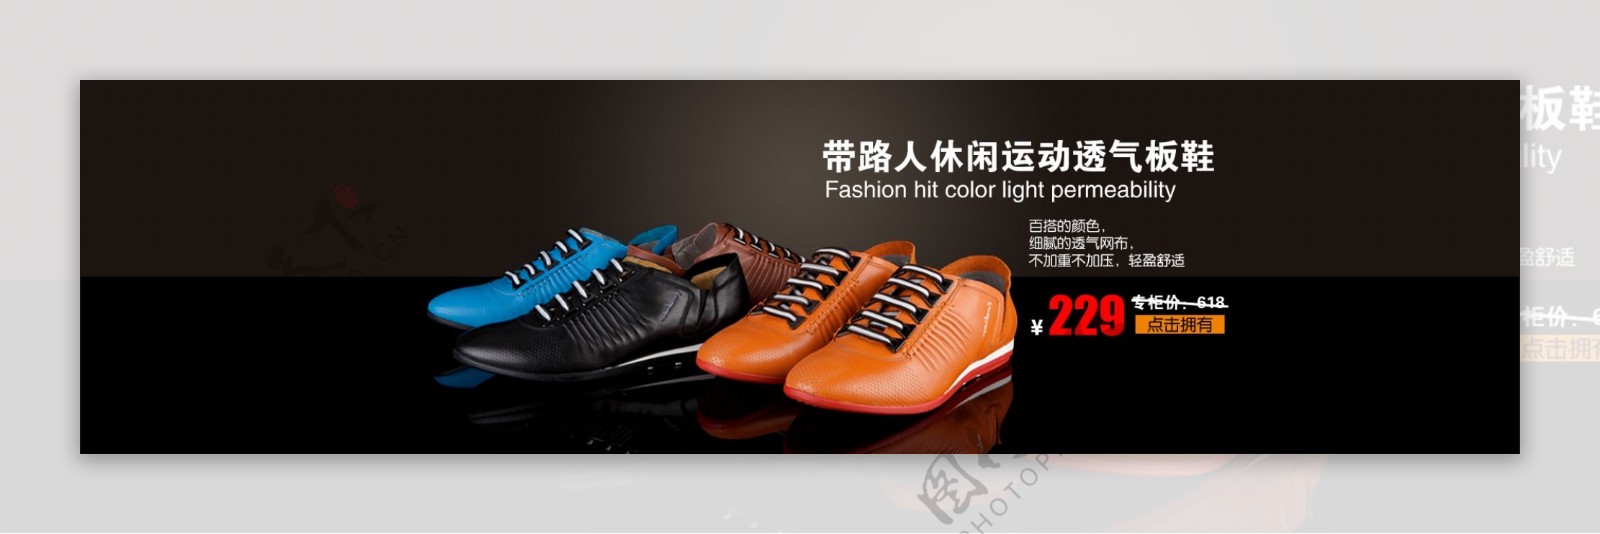 淘宝鞋子促销广告图片